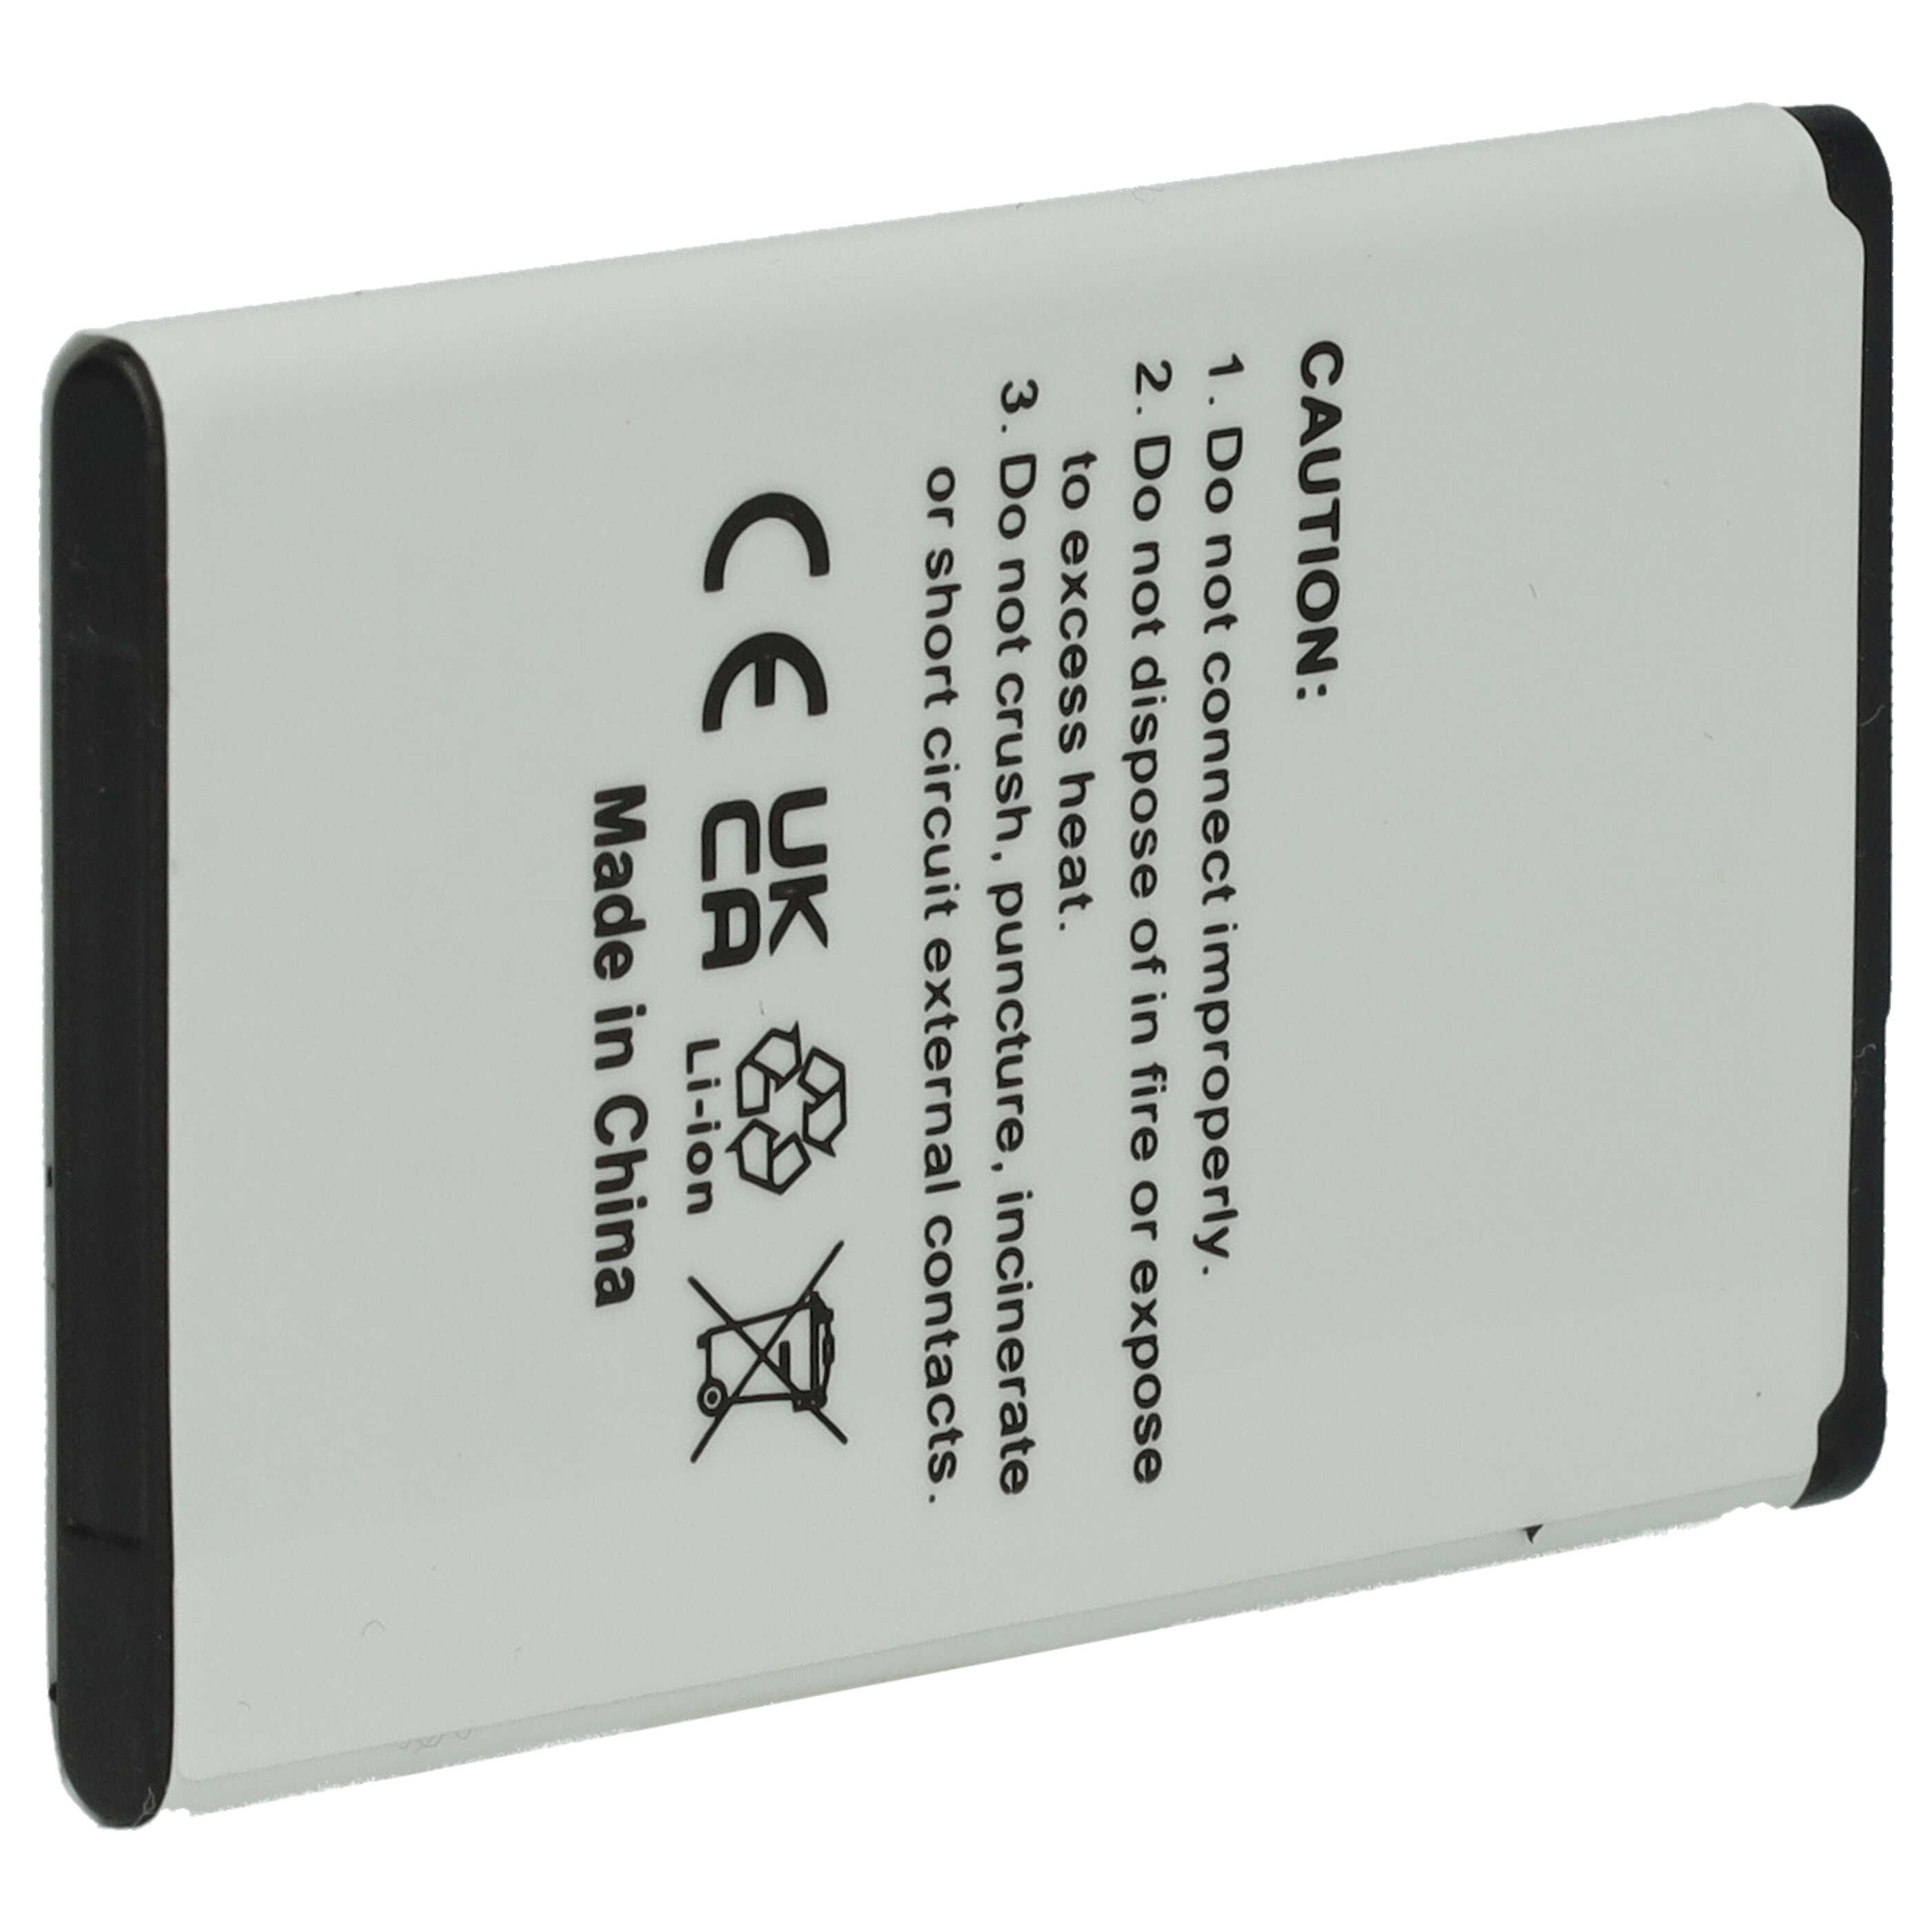 Batería reemplaza Gigaset V30145-K1310-X470 para móvil, tercera edad teléfono Gigaset - 800 mAh 3,7 V Li-Ion